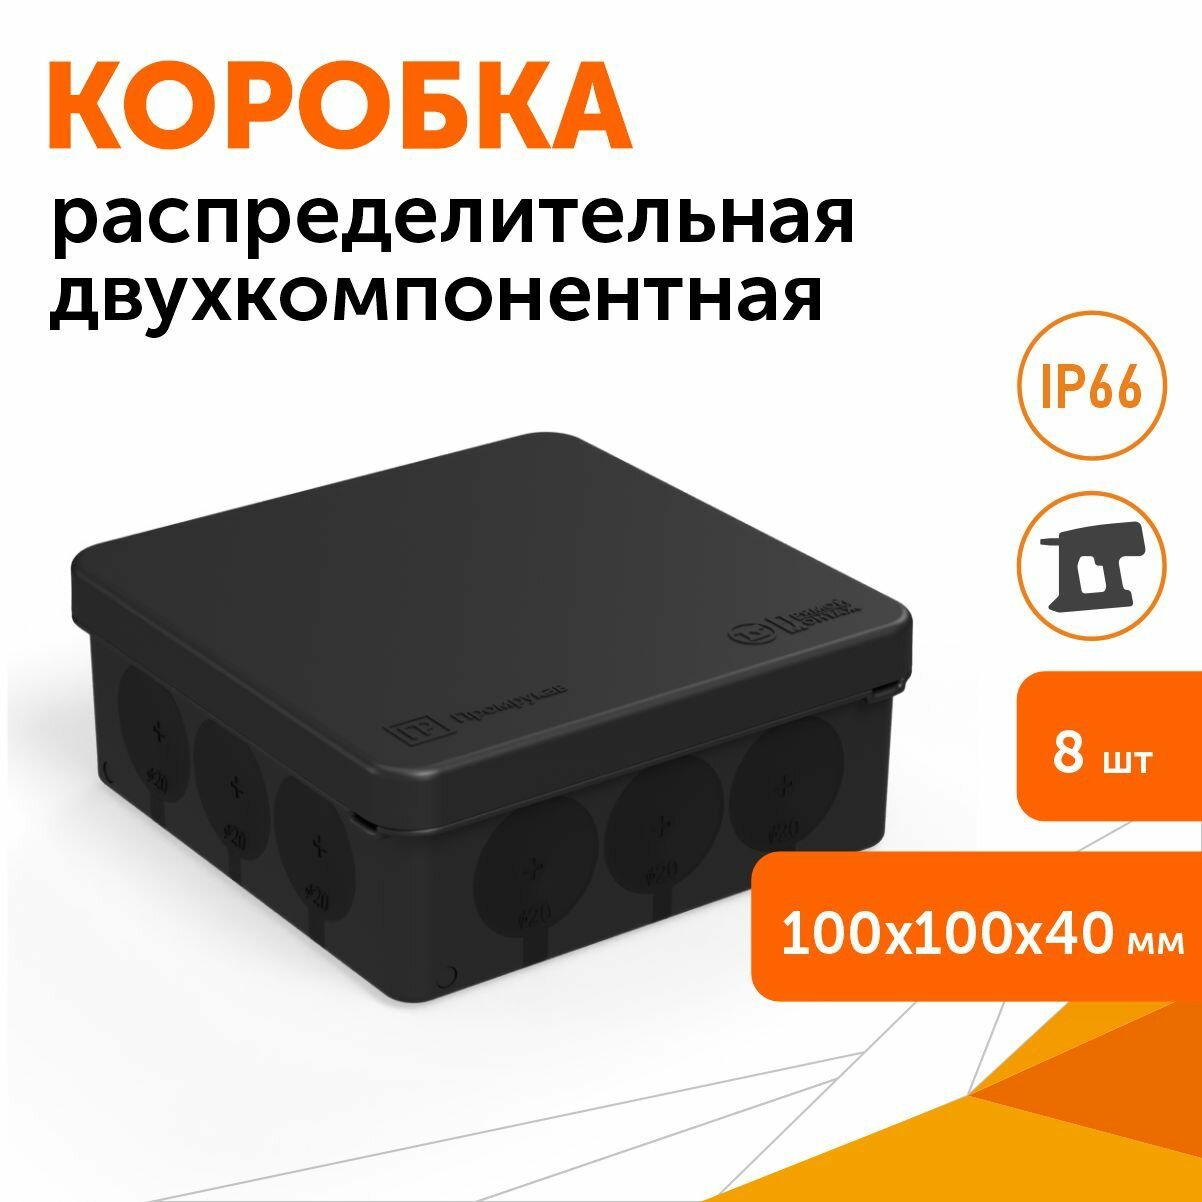 Комплект коробка распределительная 60-0303-9005м для прямого монтажа двухкомпонентная 100х100х40, 8шт/уп